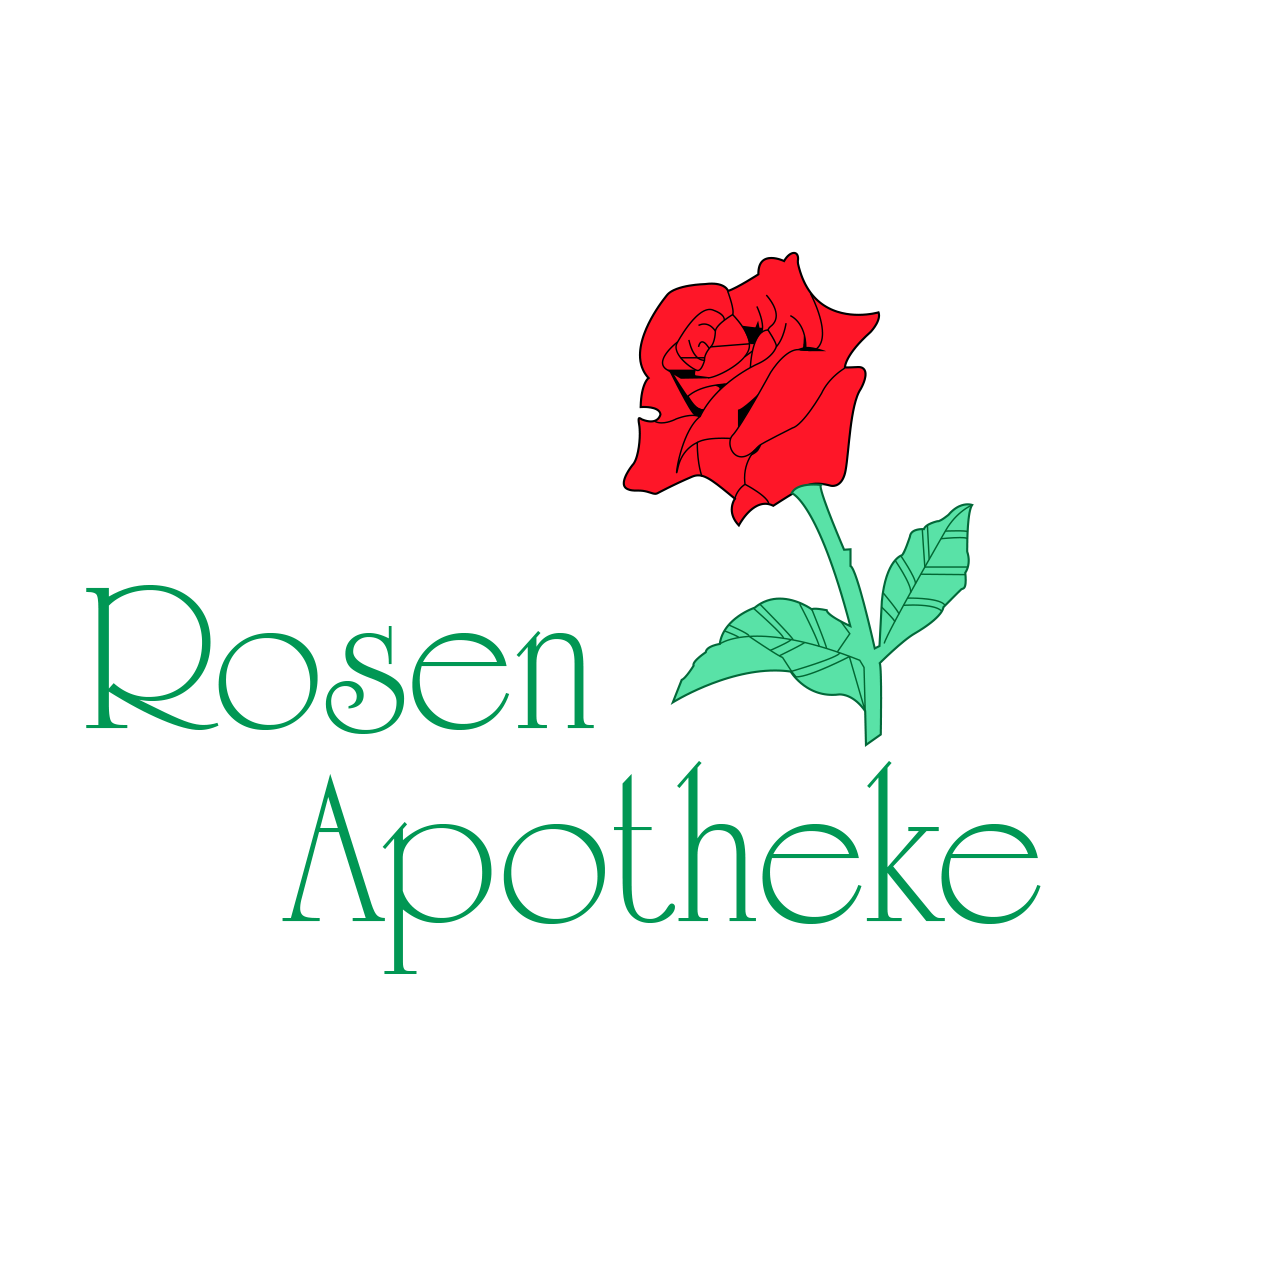 Rosen-Apotheke in Münster